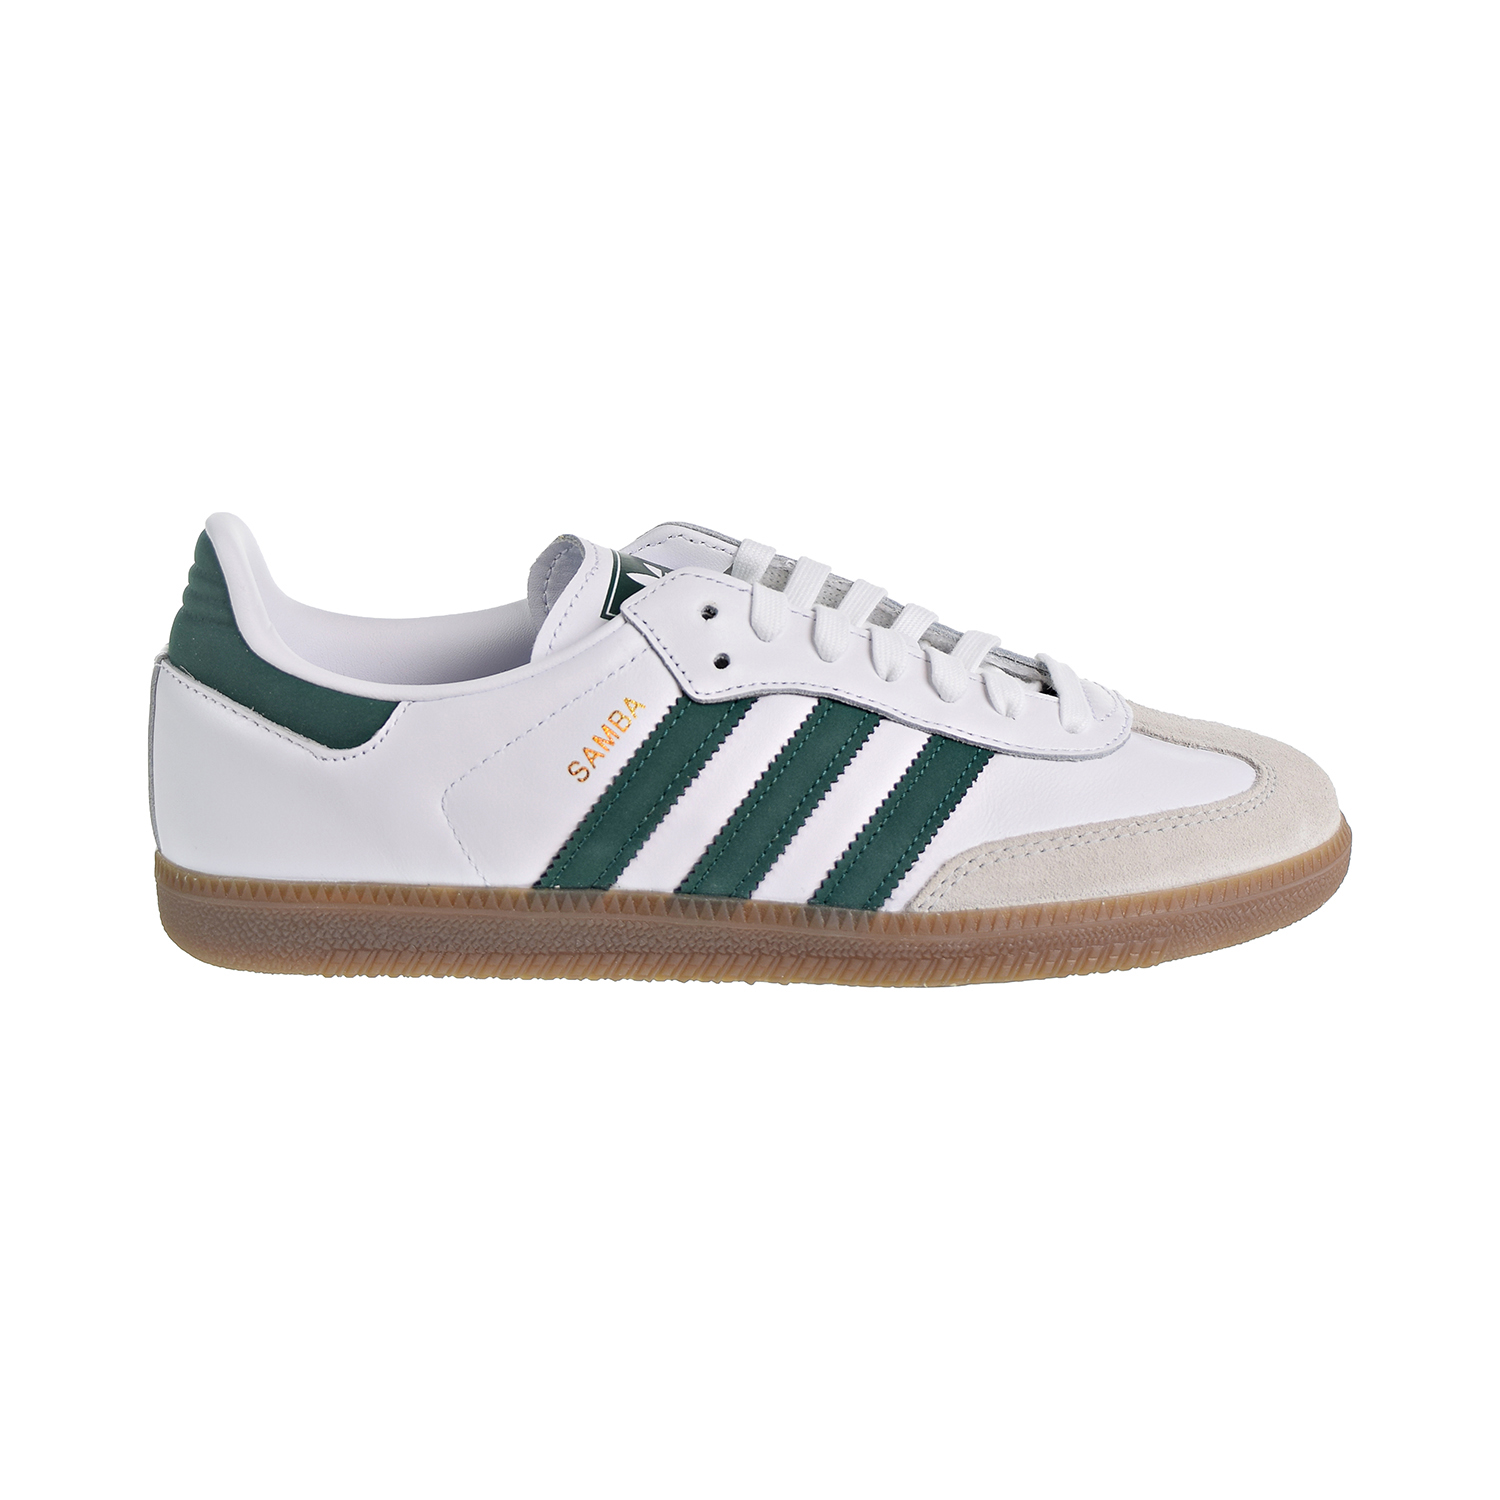 Adidas Samba OG Men's Shoes Cloud White/Collegiate Green/Crystal White ...